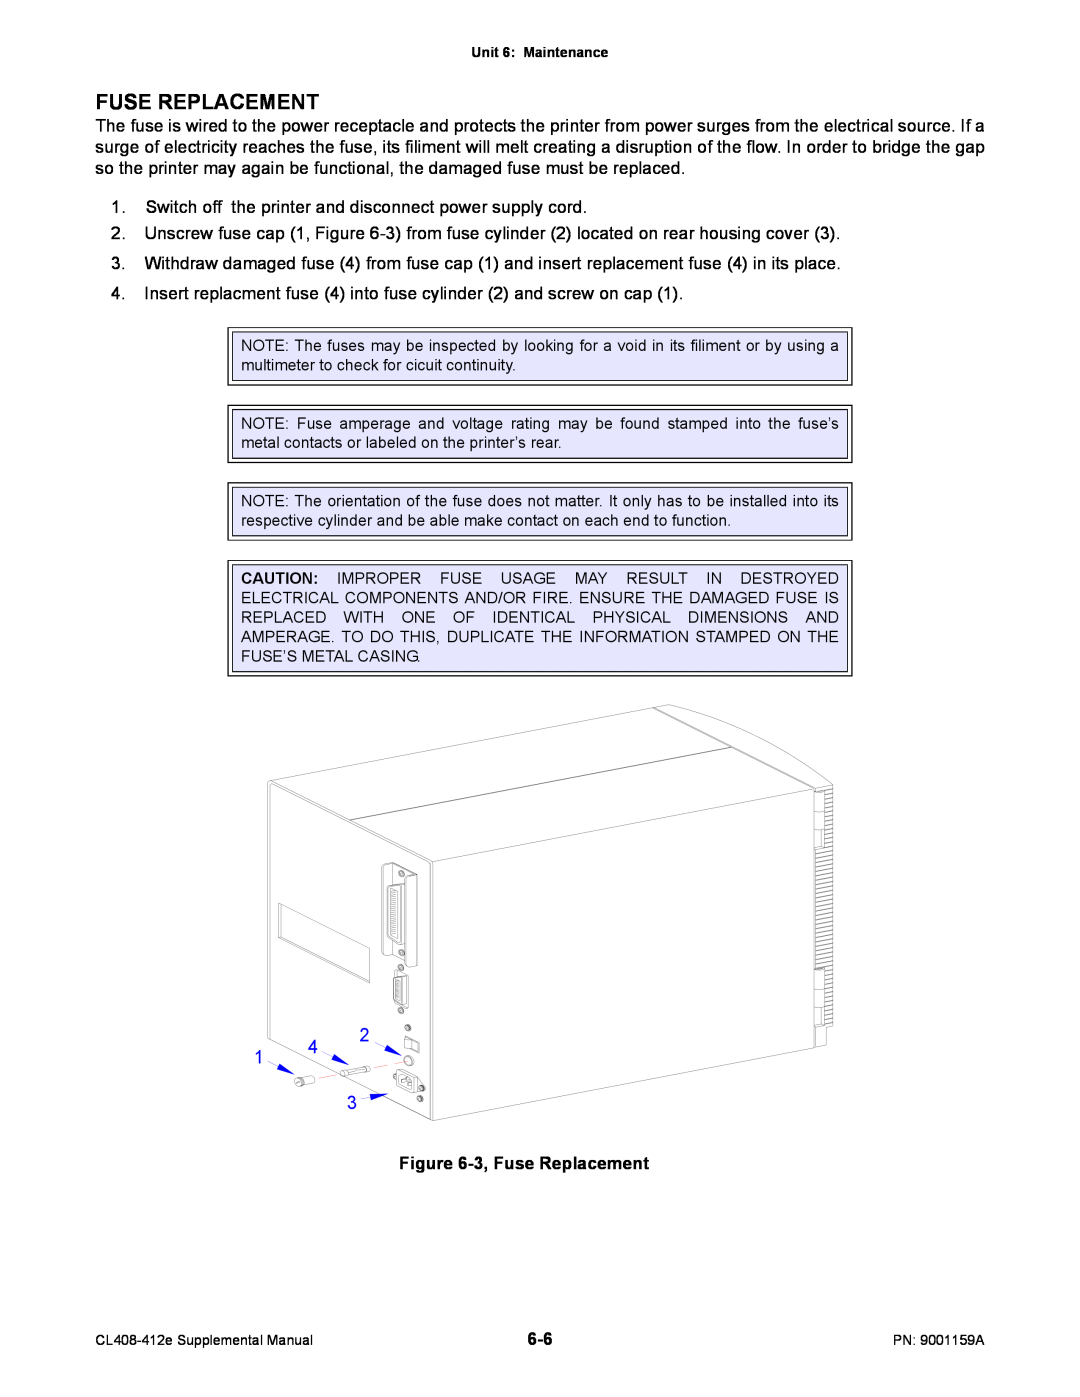 SATO CL408-412e manual 3, Fuse Replacement 